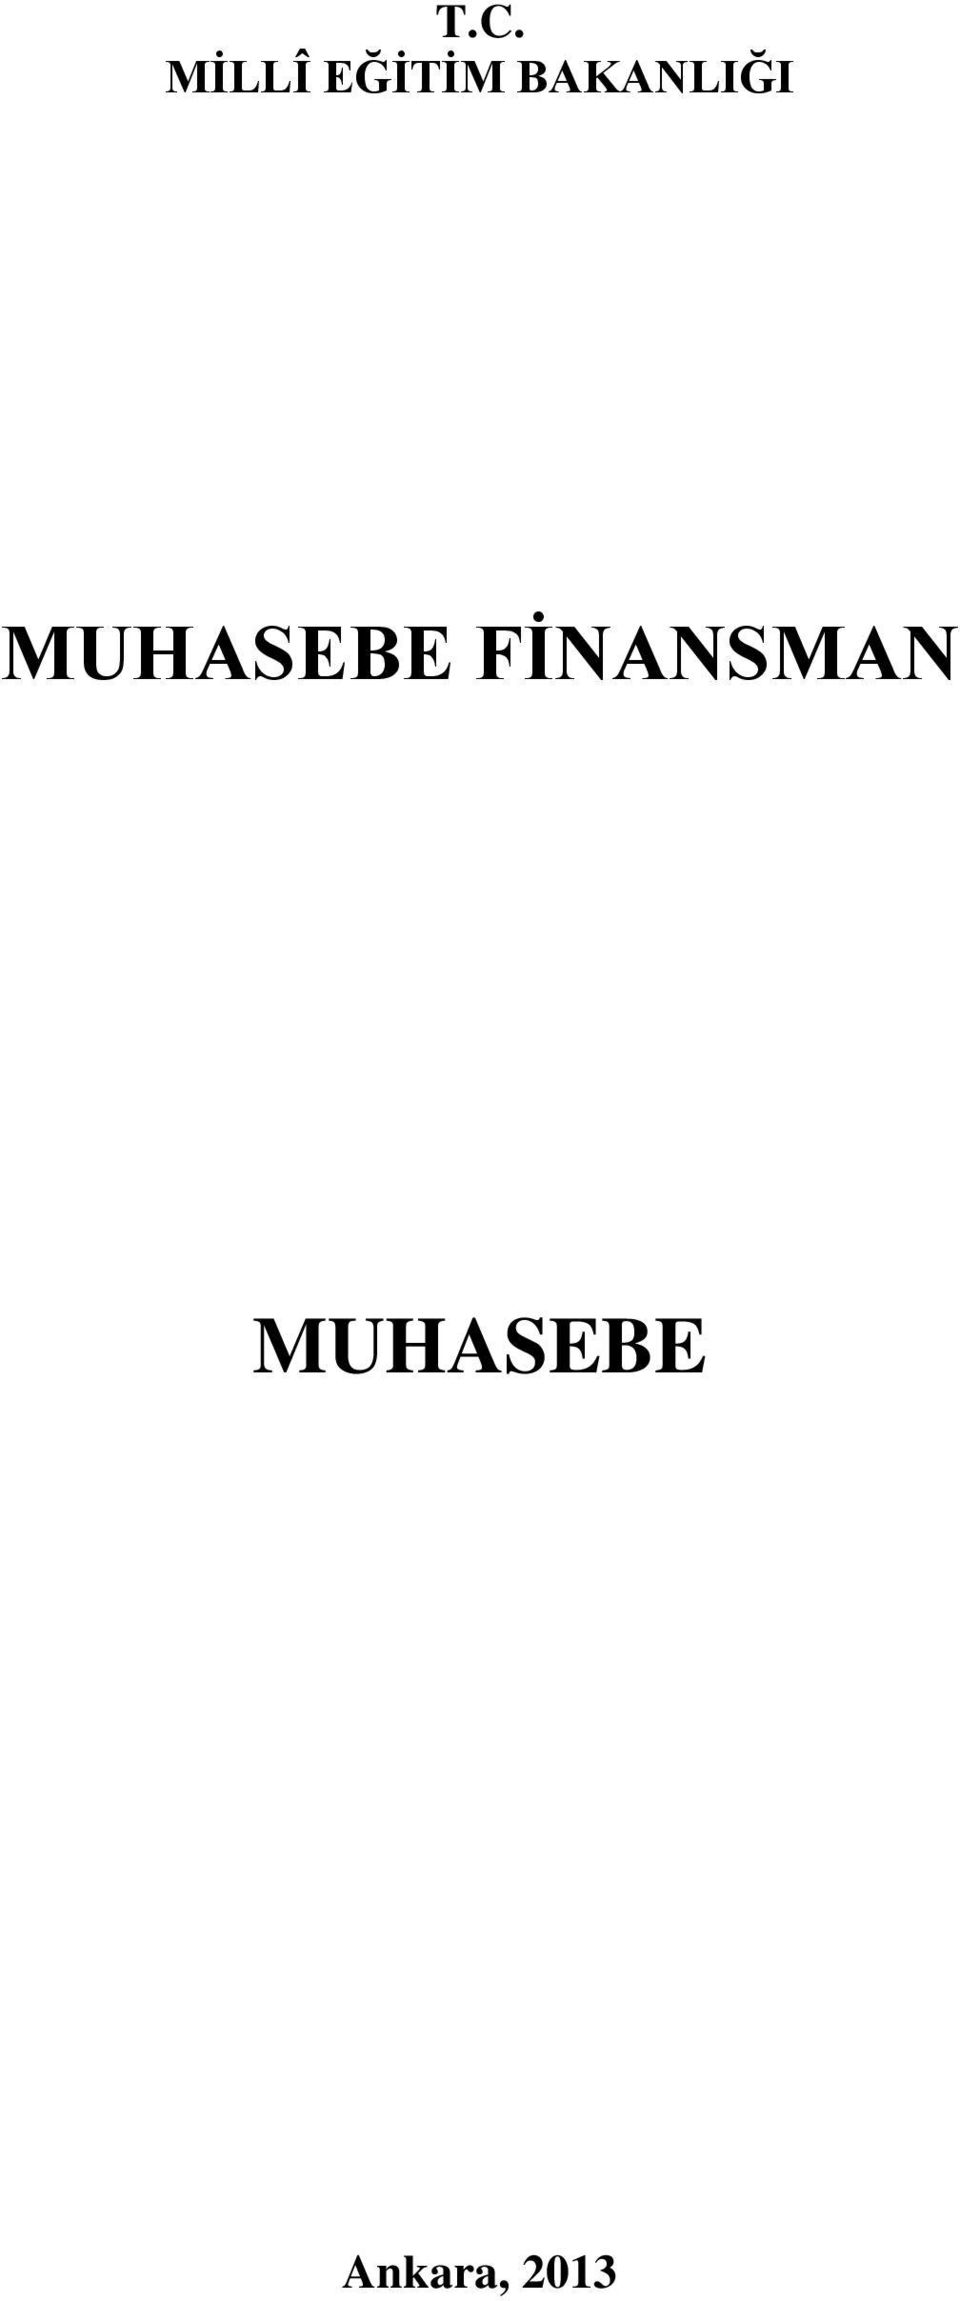 MUHASEBE